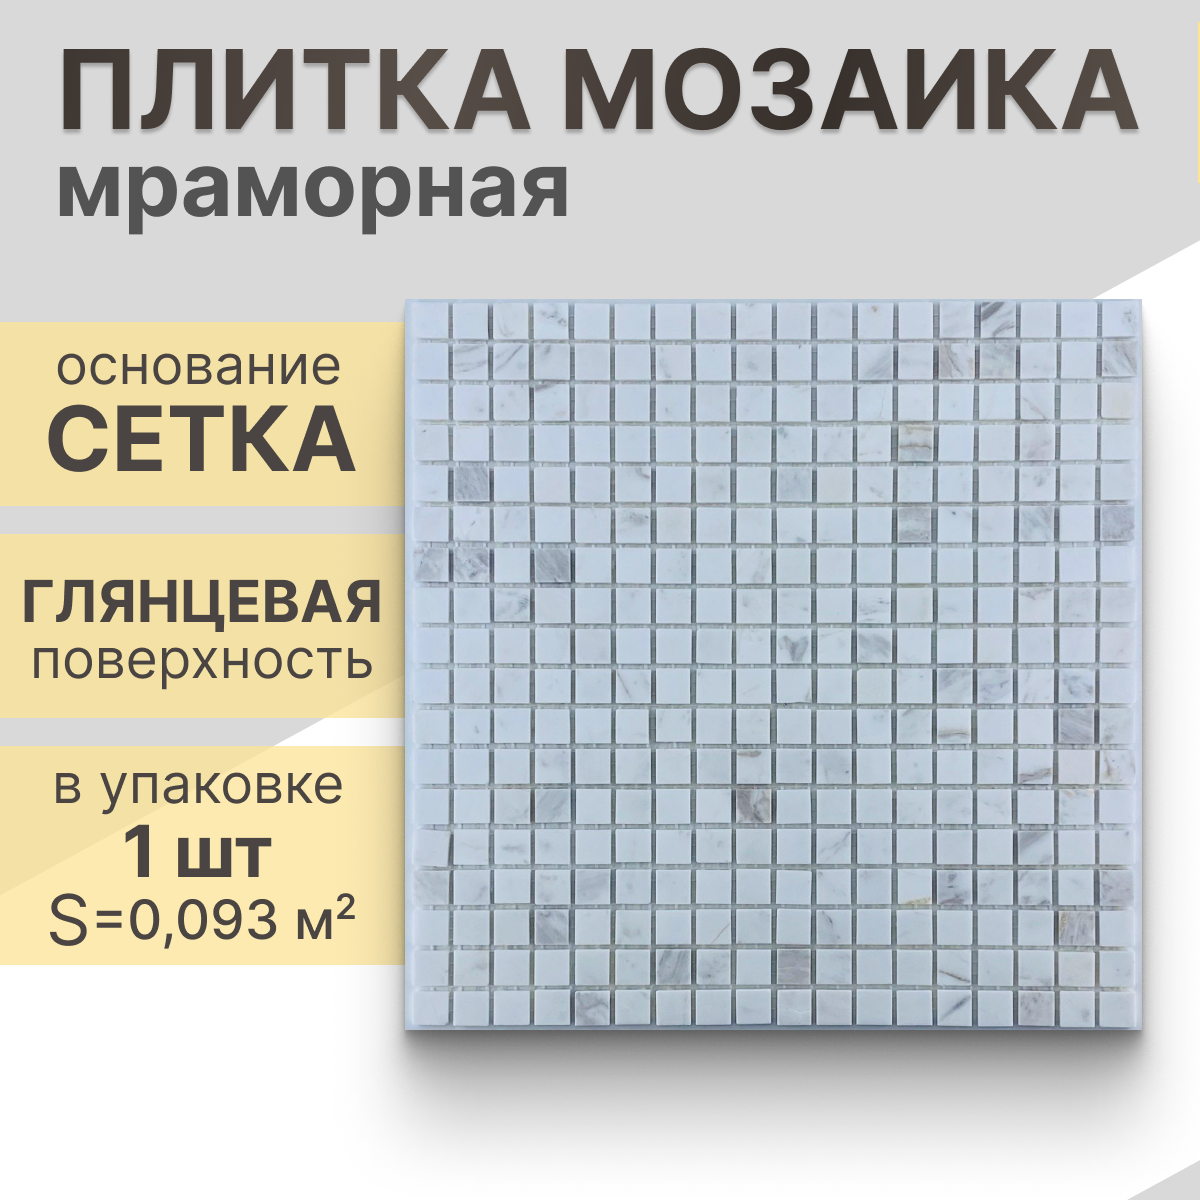 Мозаика (мрамор) NS mosaic Kp-735 30,5x30,5 см 1 шт (0,093 м²)